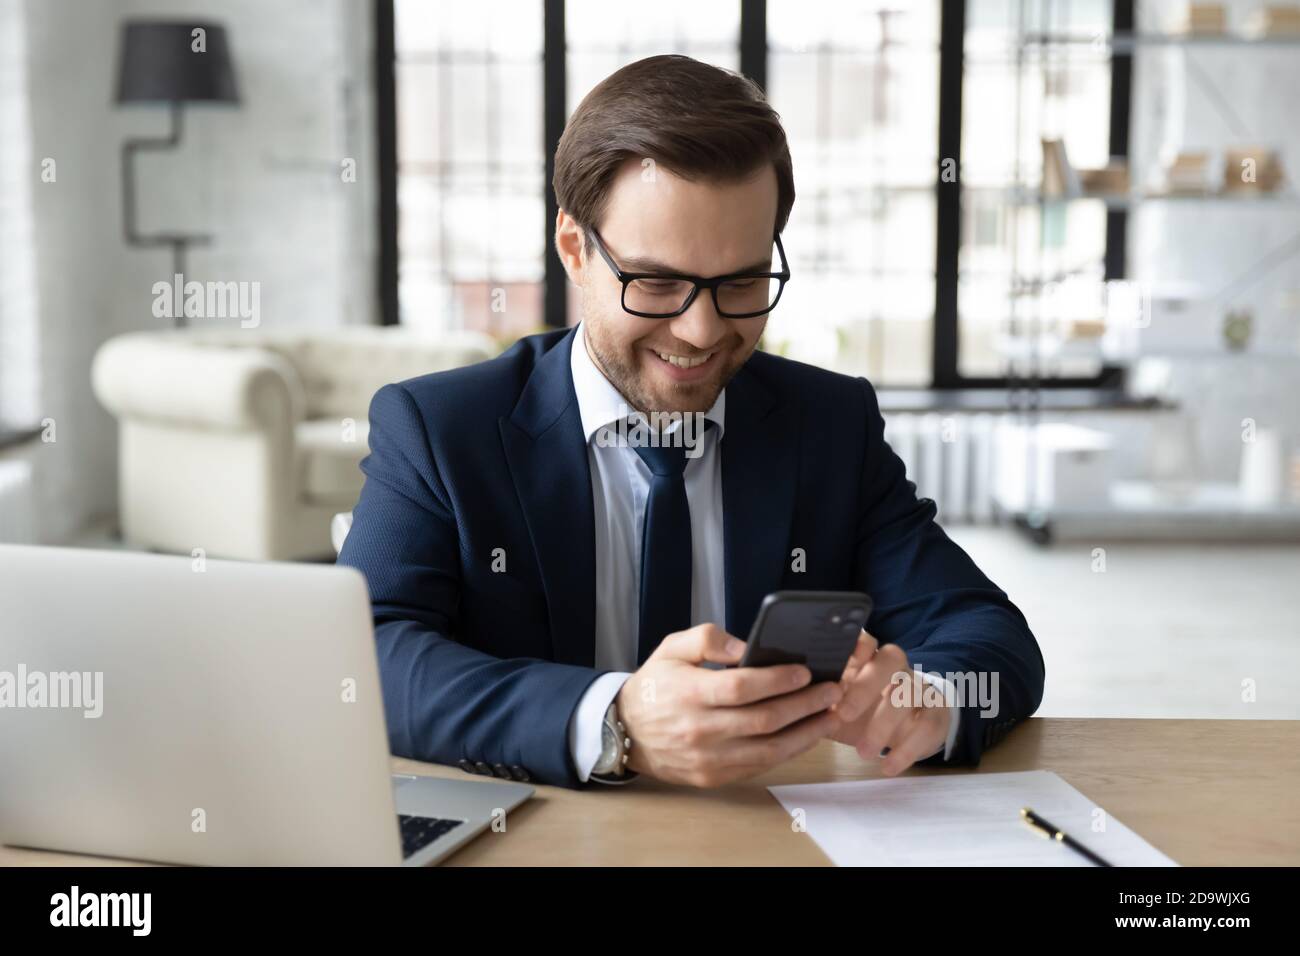 Lächelnder junger männlicher ceo Executive Manager mit Smartphone. Stockfoto